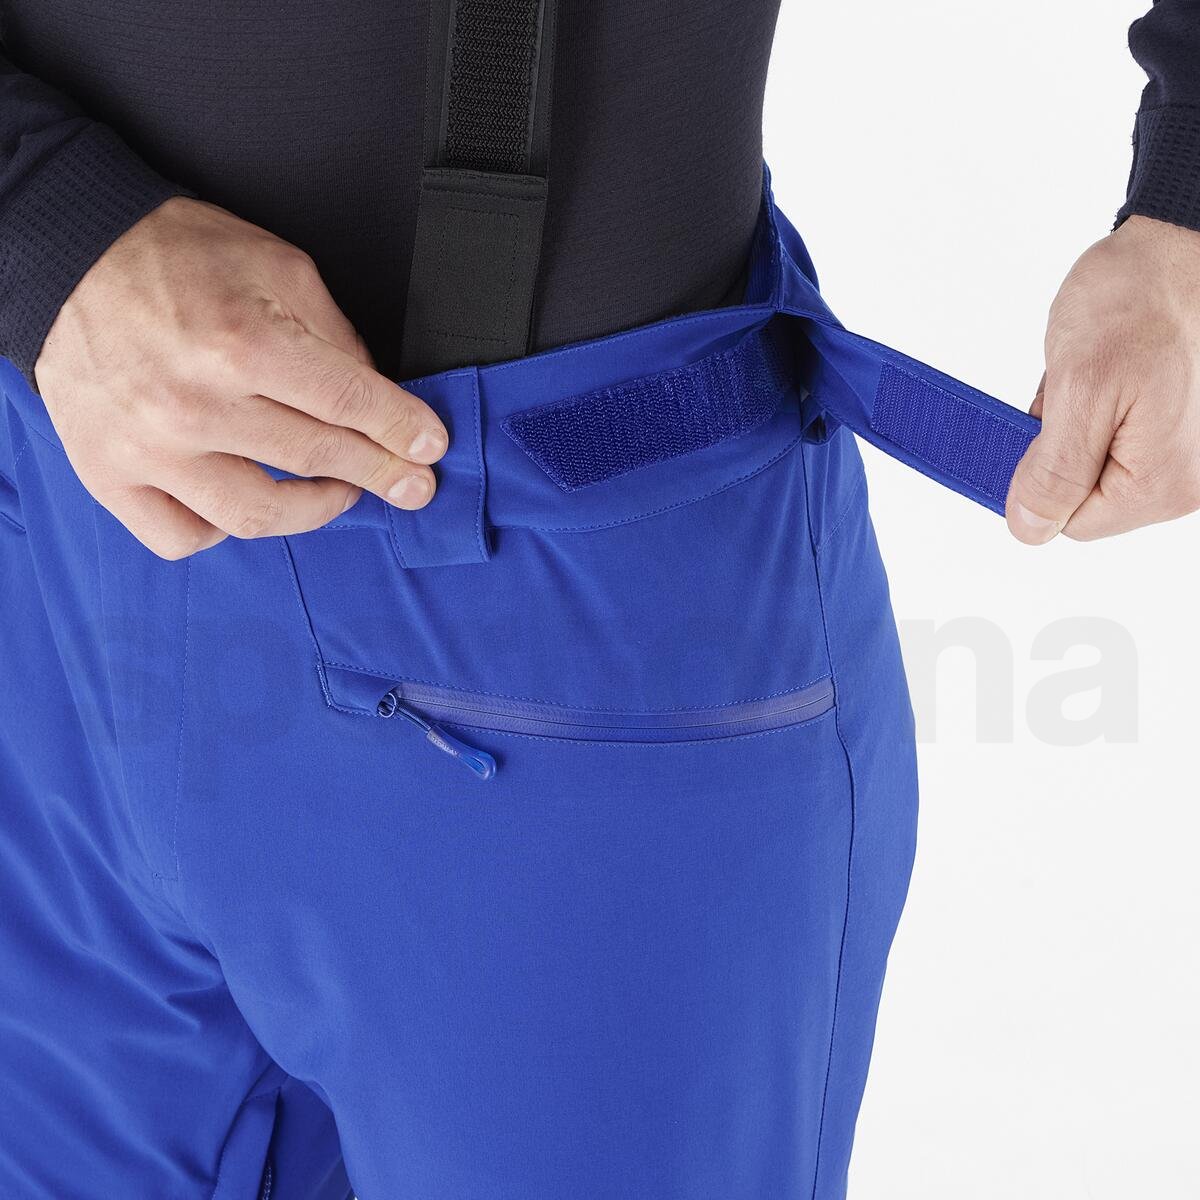 Kalhoty Salomon Edge Pant M - modrá (prodloužená délka)